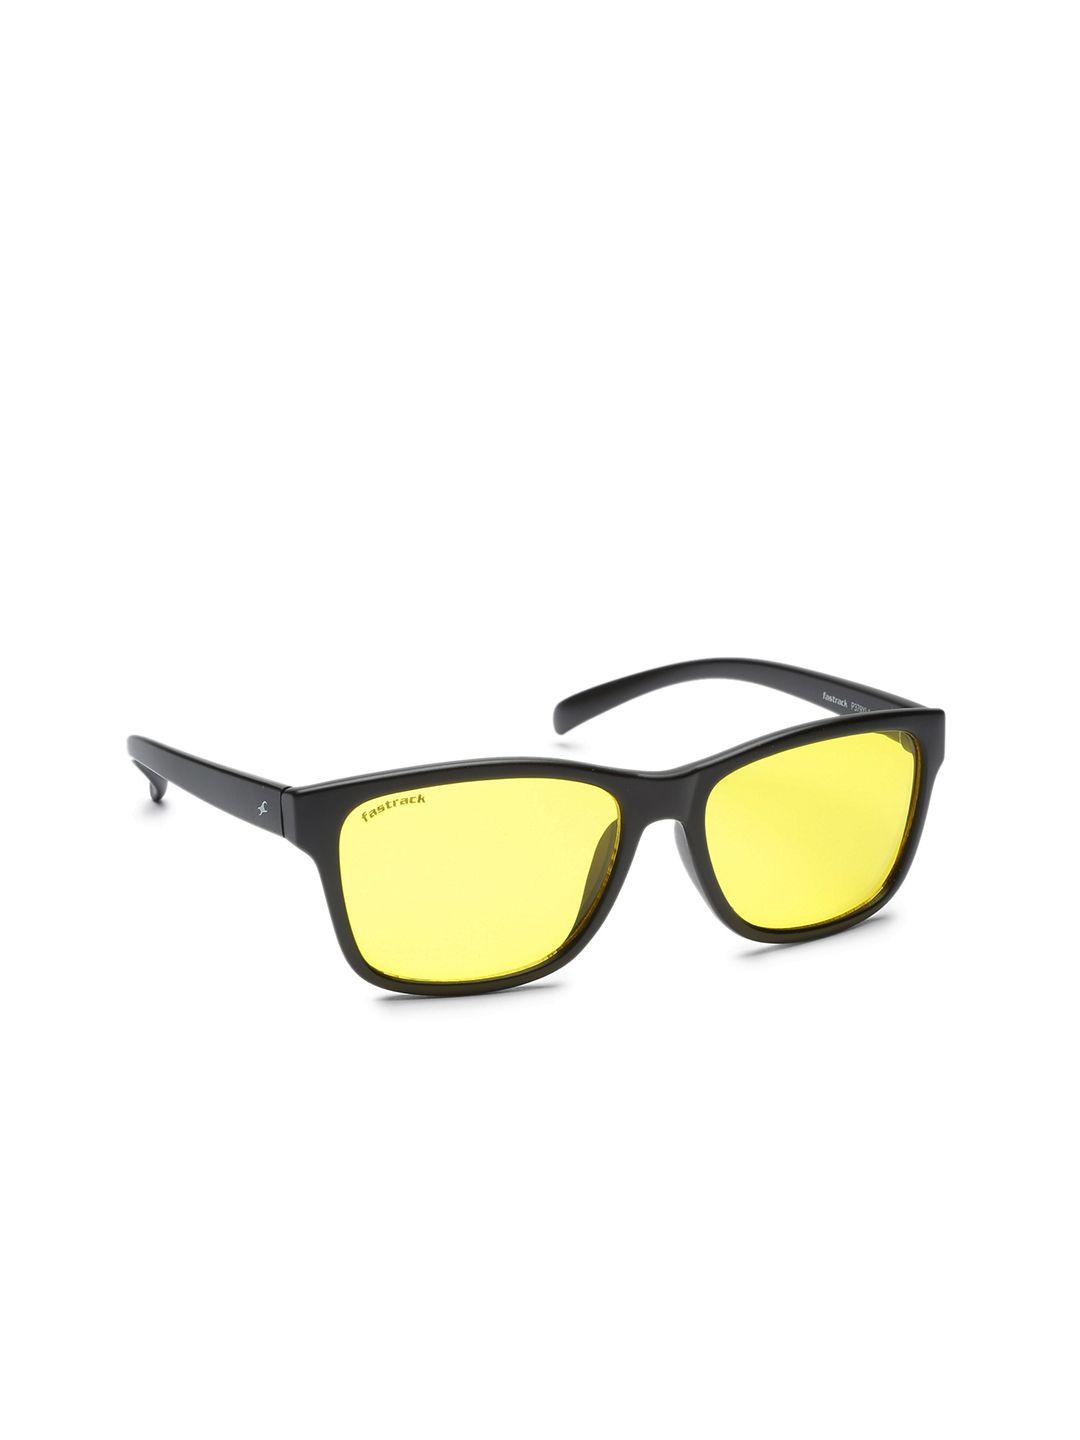 fastrack-men-square-sunglasses-p379yl1